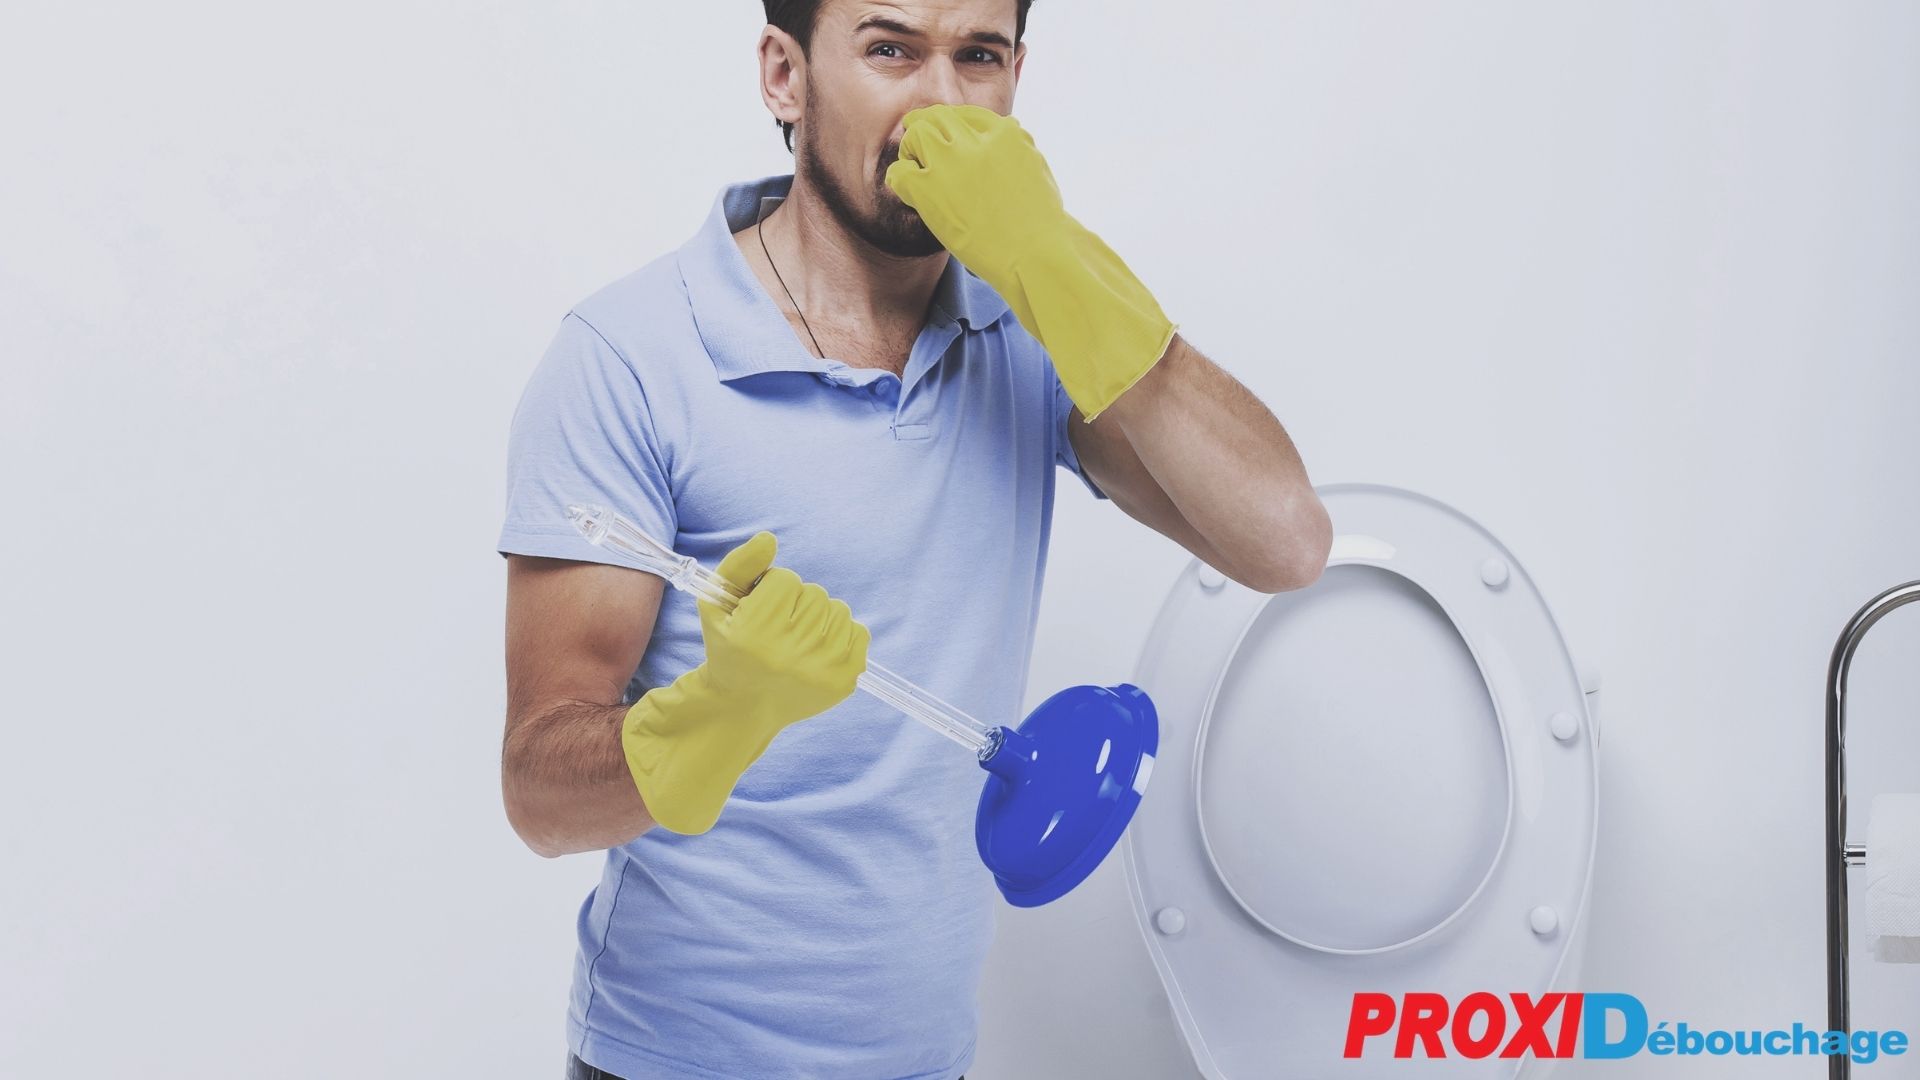 Comment faire face aux mauvaises odeurs des canalisations ? -  Proxi-Débouchage